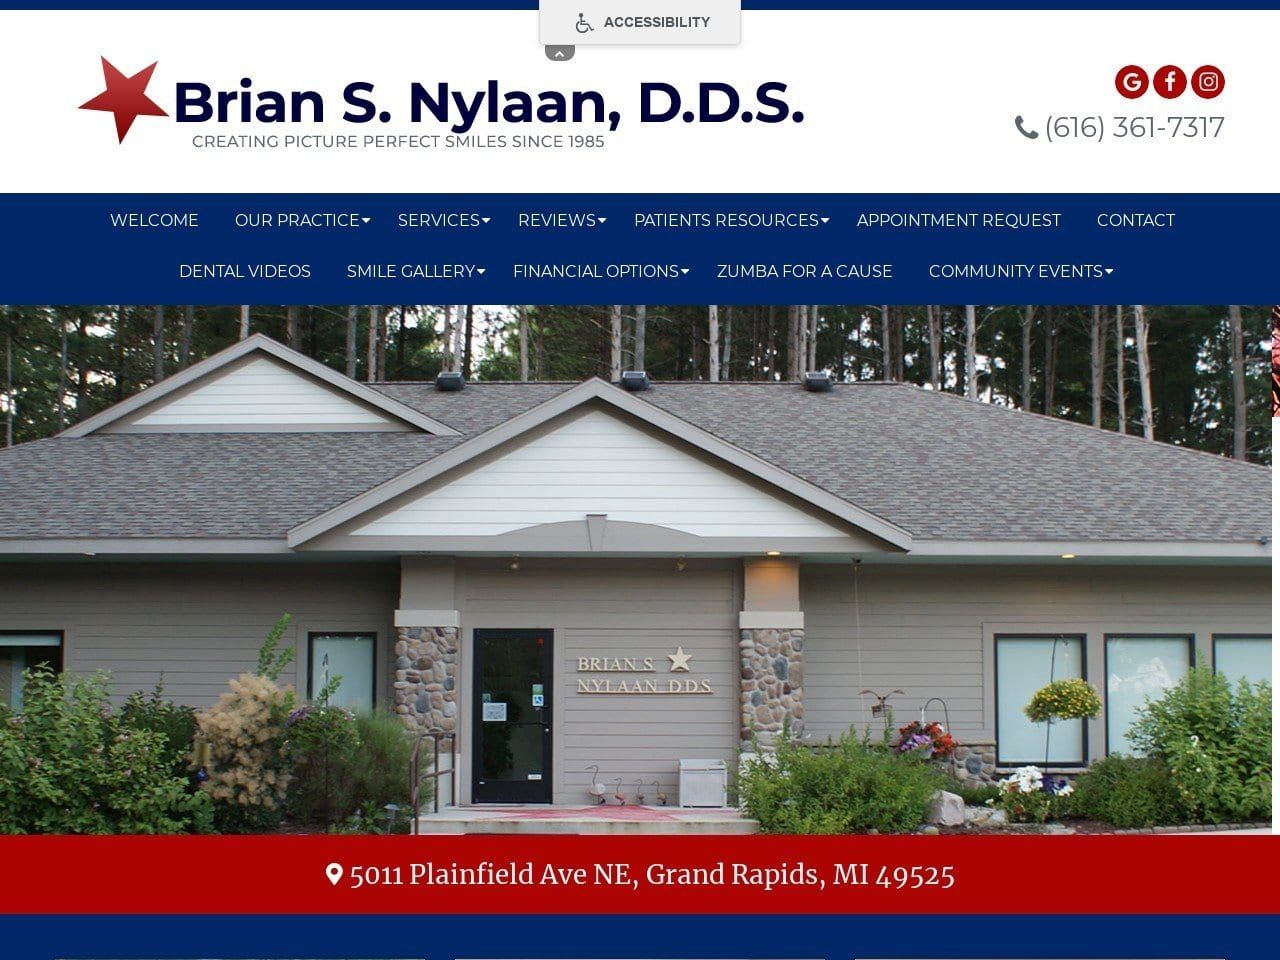 Brian S. Nylaan D.D.S. P.C. Website Screenshot from nylaandental.com